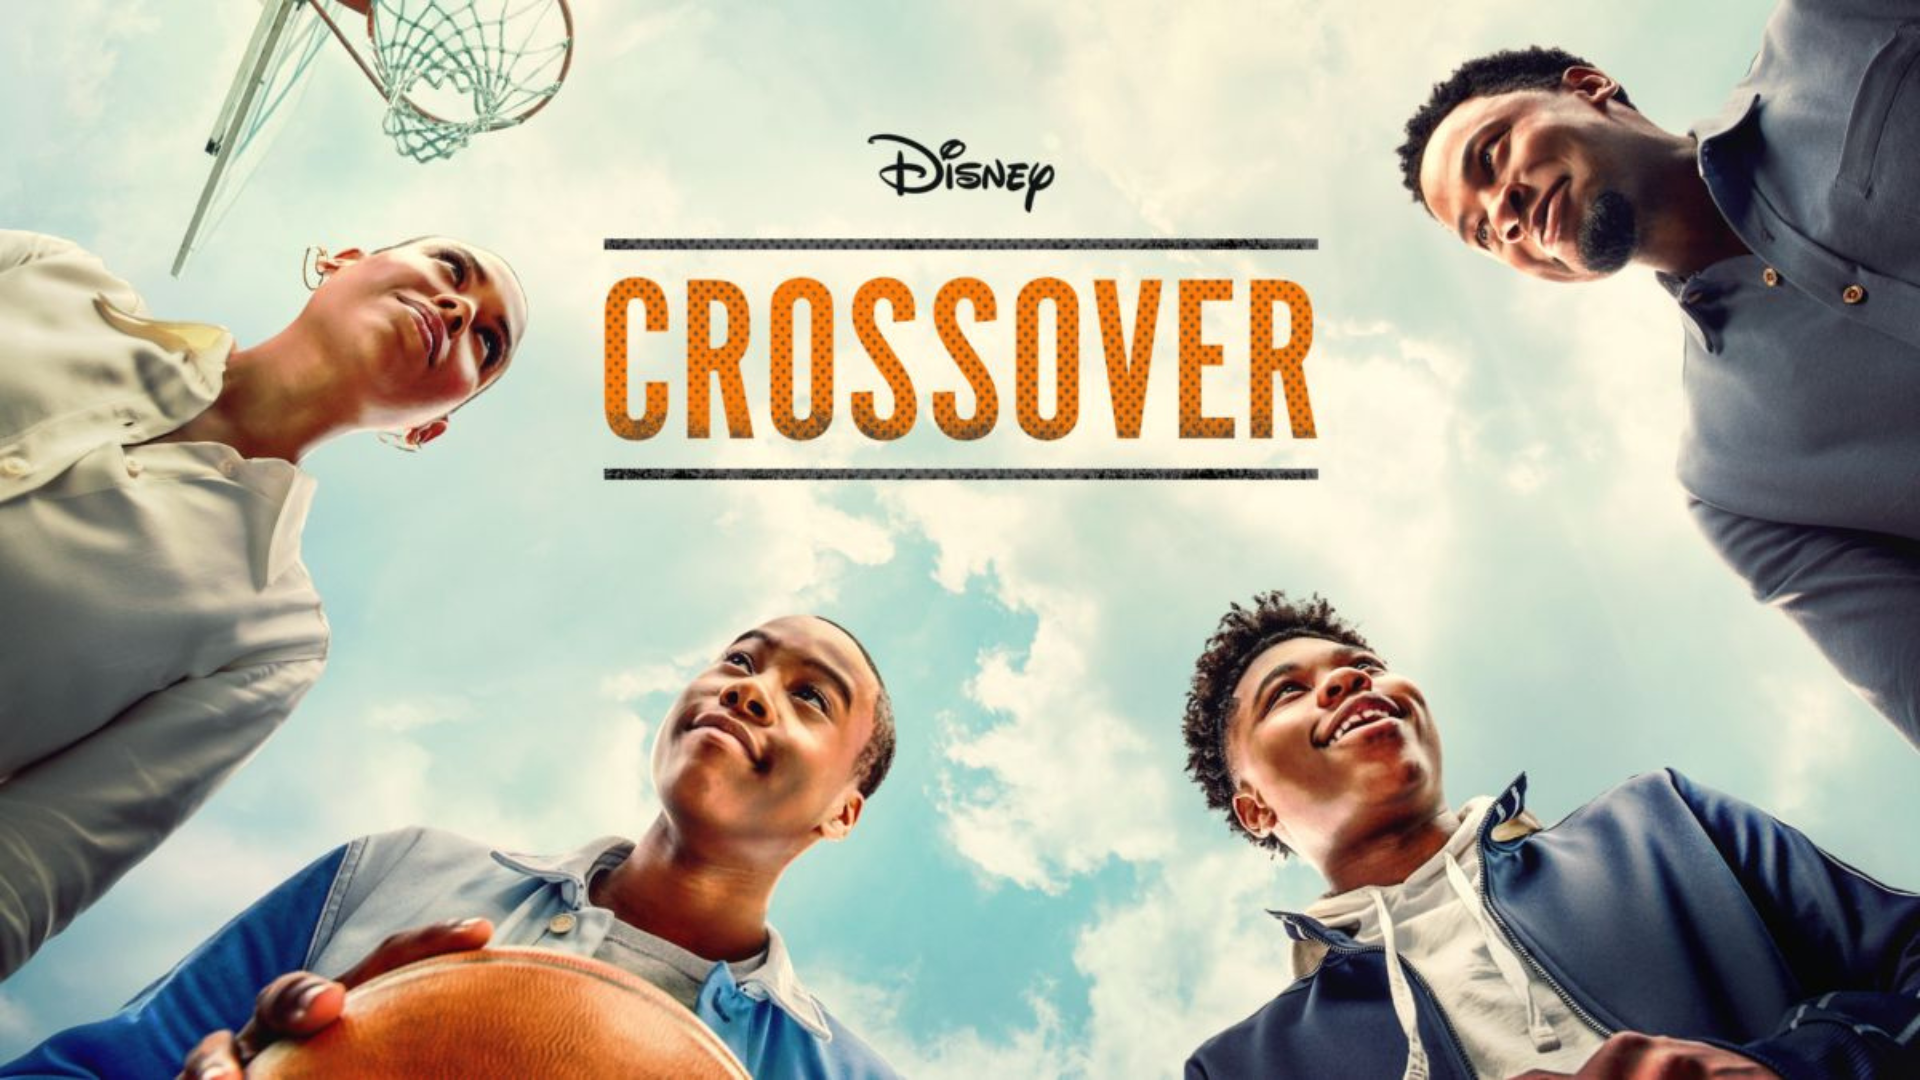 Foto de capa de série Crossover. Nela, há quatro meninos negros se olhando 